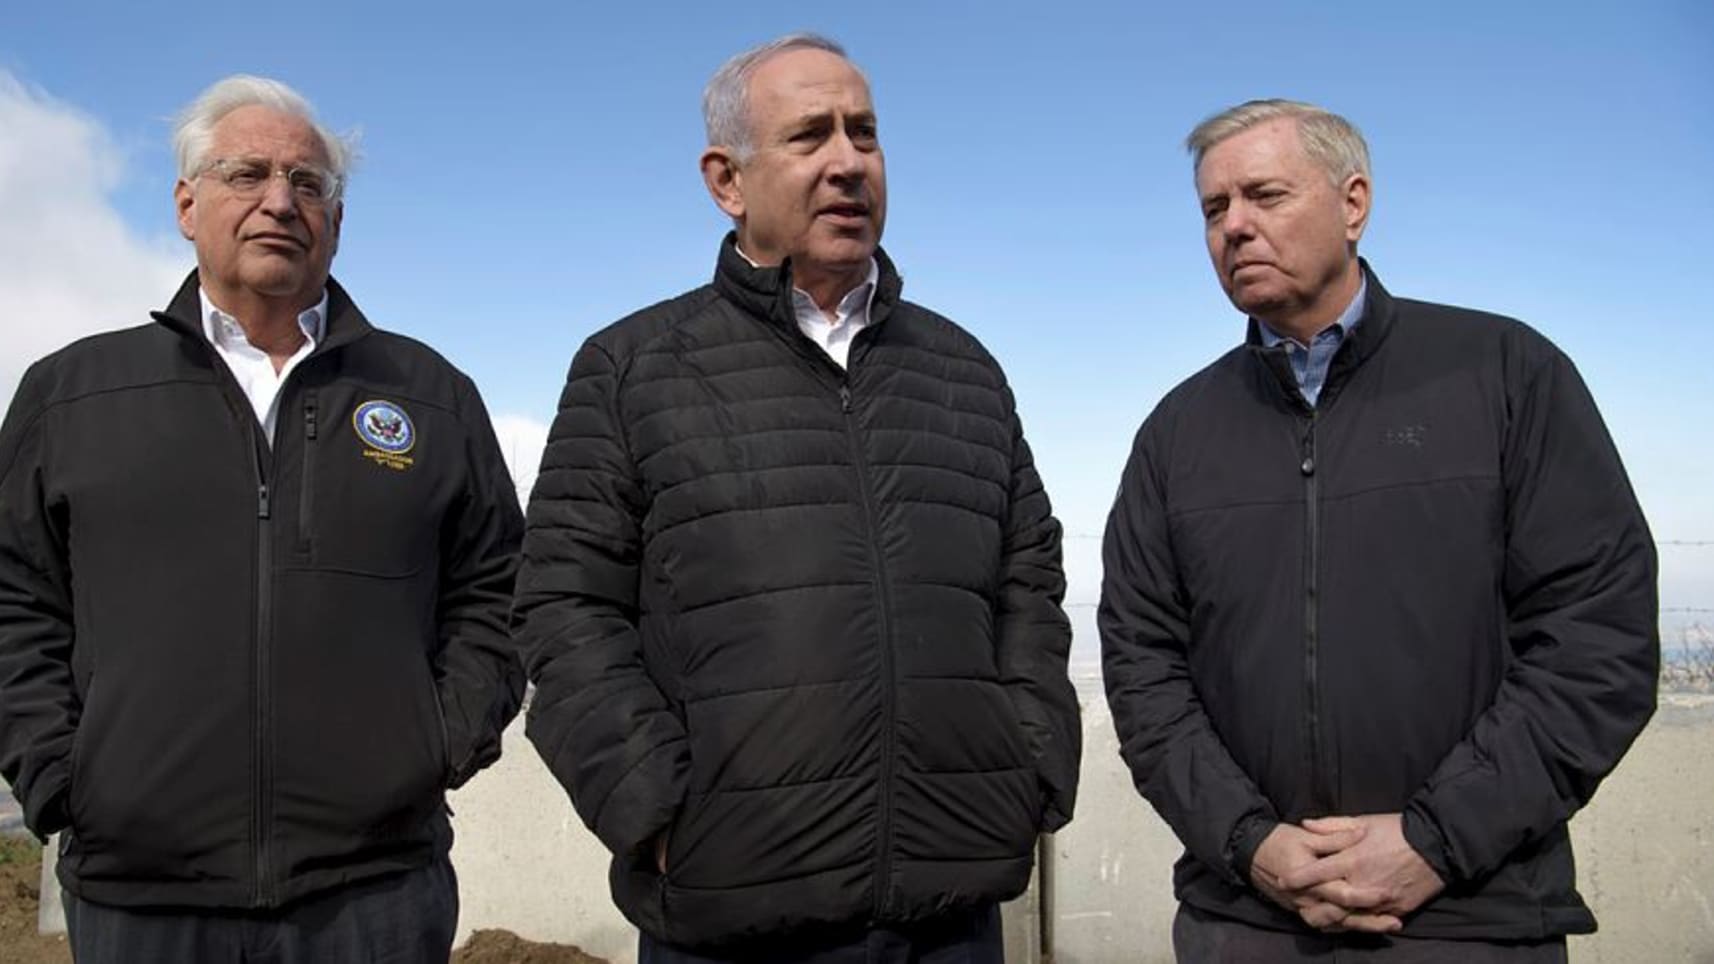 Netanyahu, Friedman, and Graham